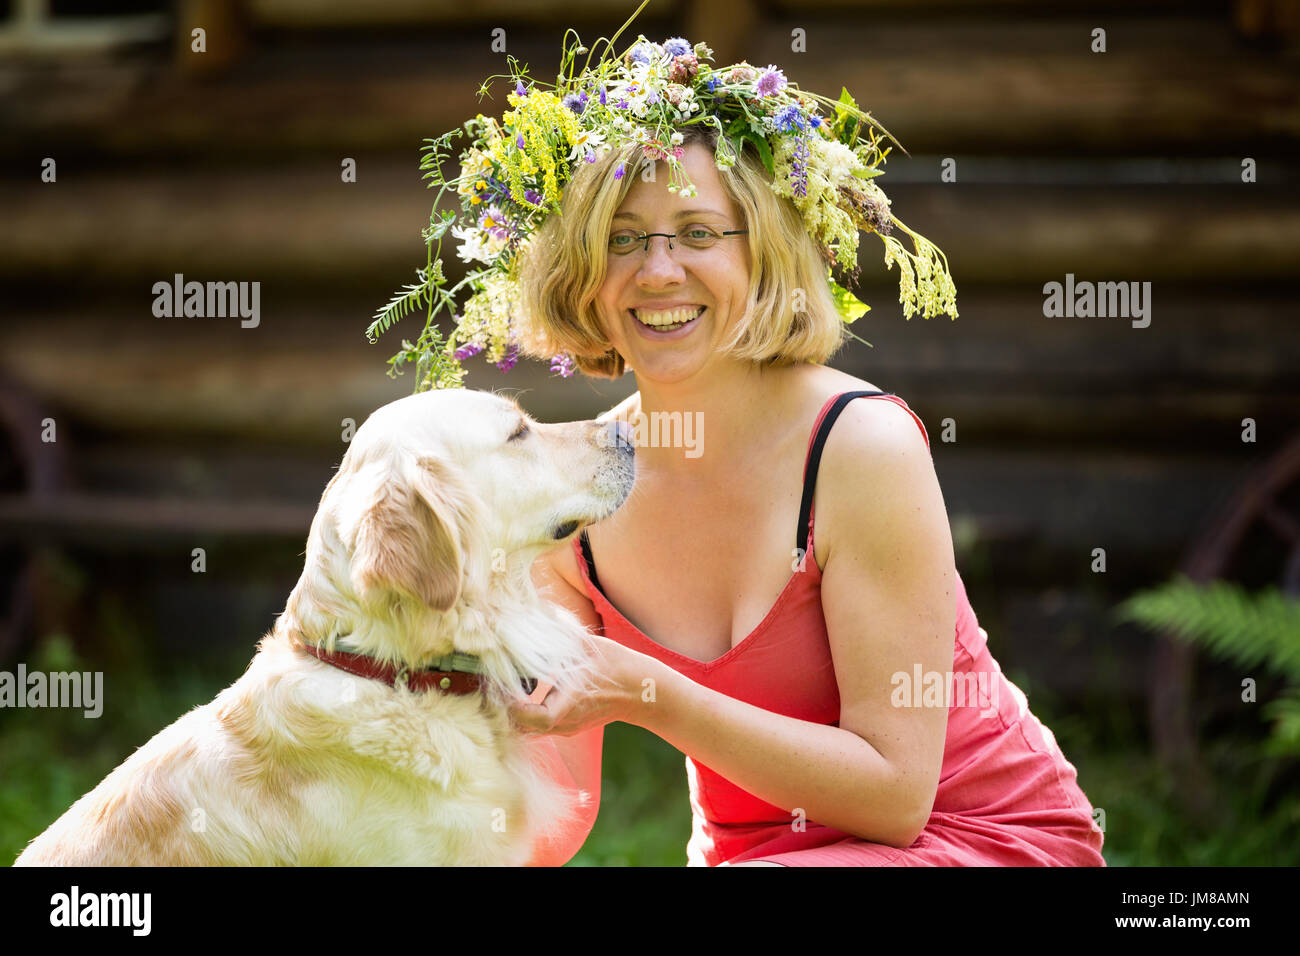 Jeune femme avec couronne sur sa tête et un chien, golden retriver Banque D'Images